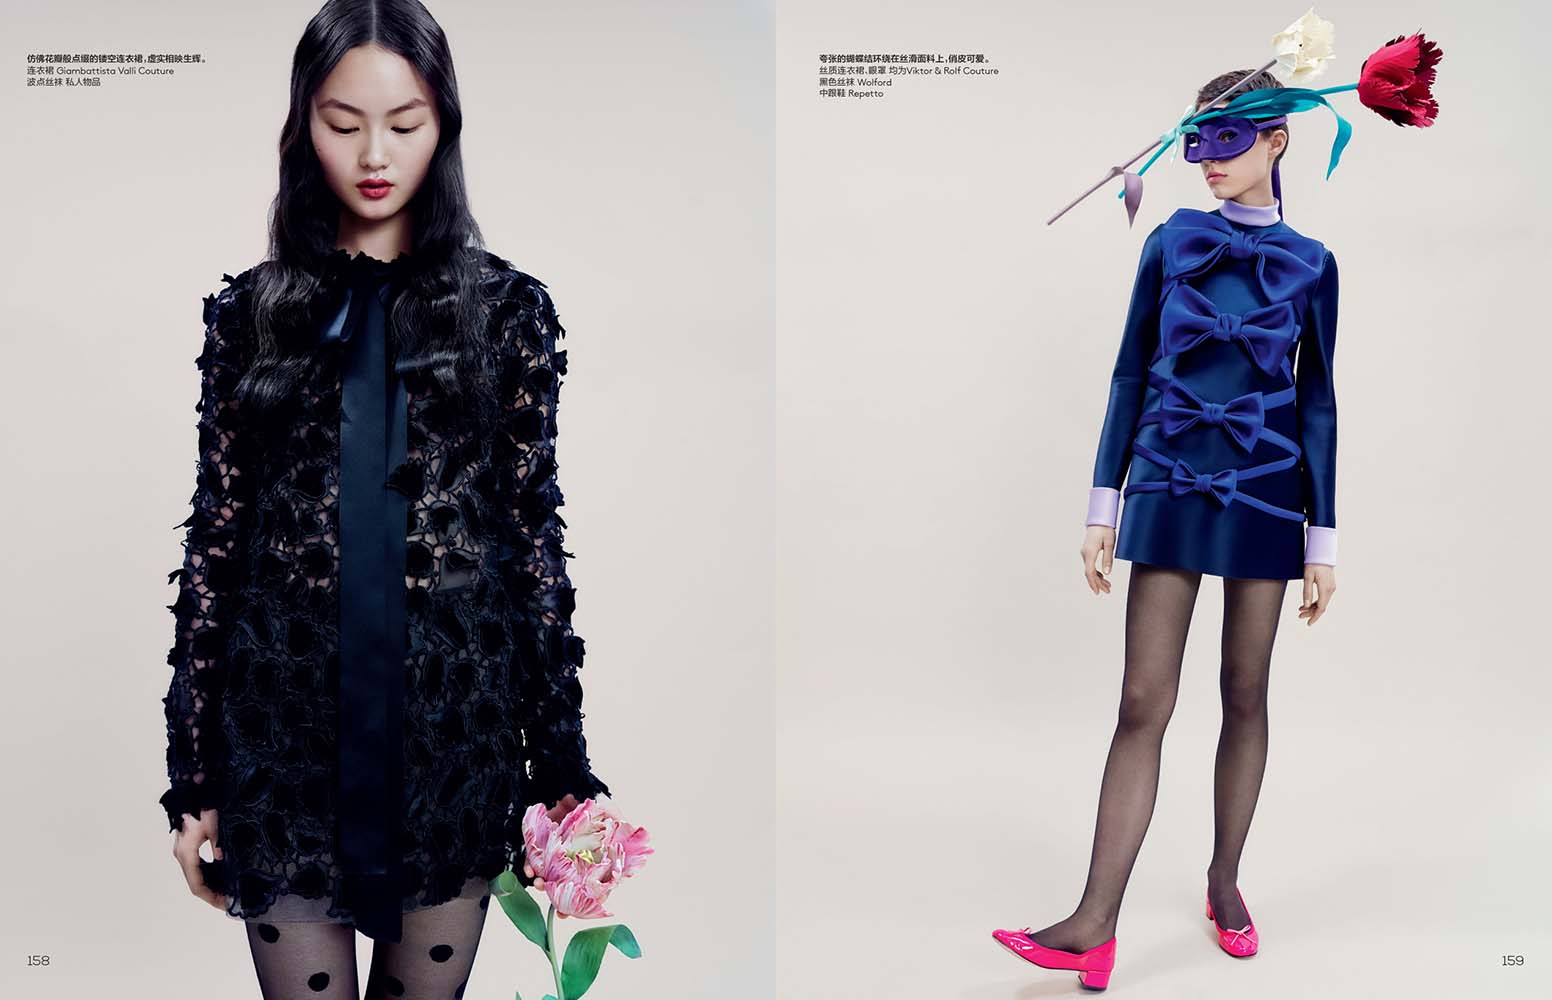 Vogue China by Shaun Beyen